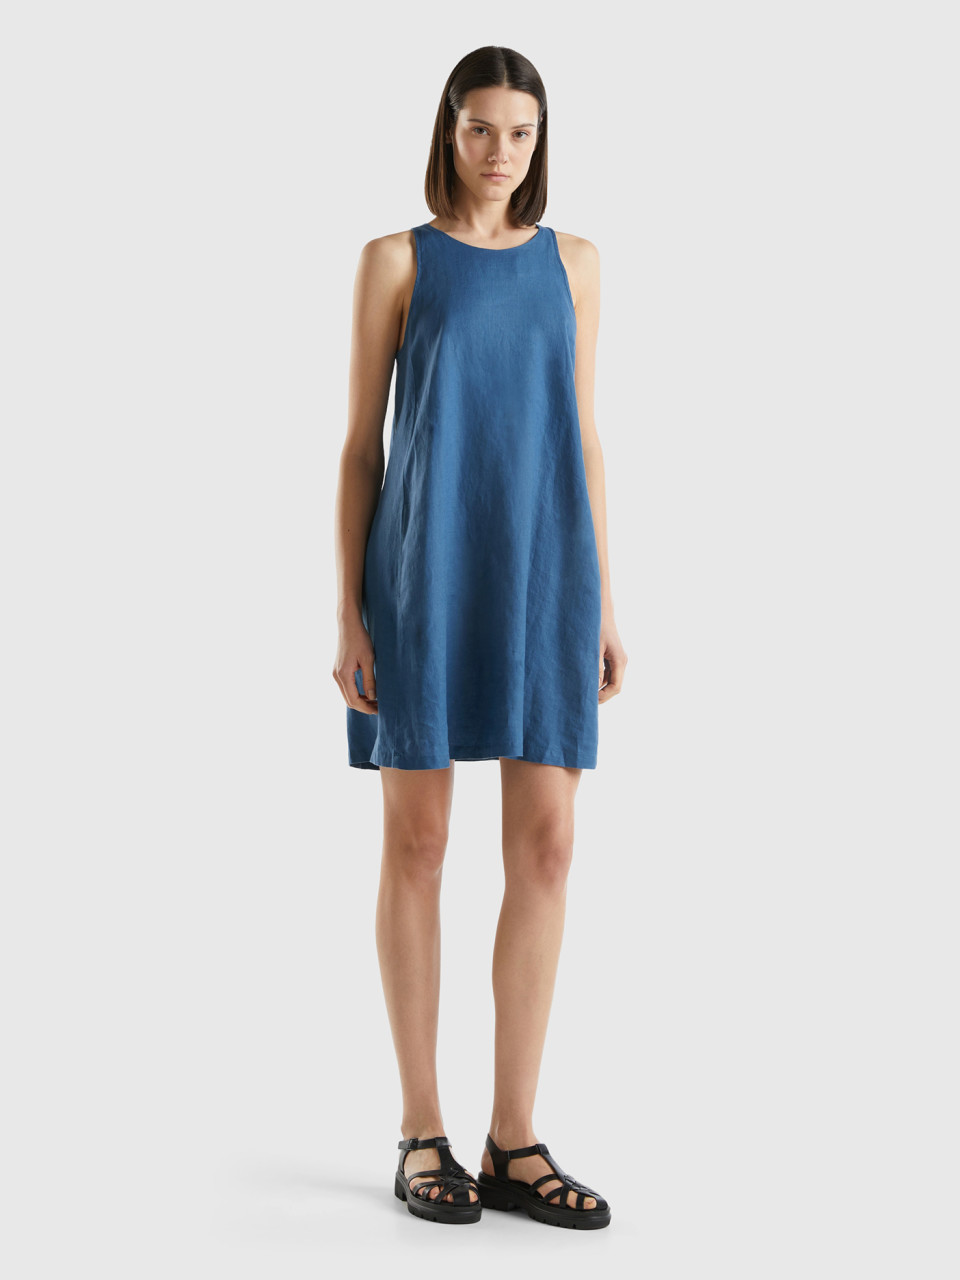 Benetton, Sleeveless Dress In Pure Linen, Blue, Women